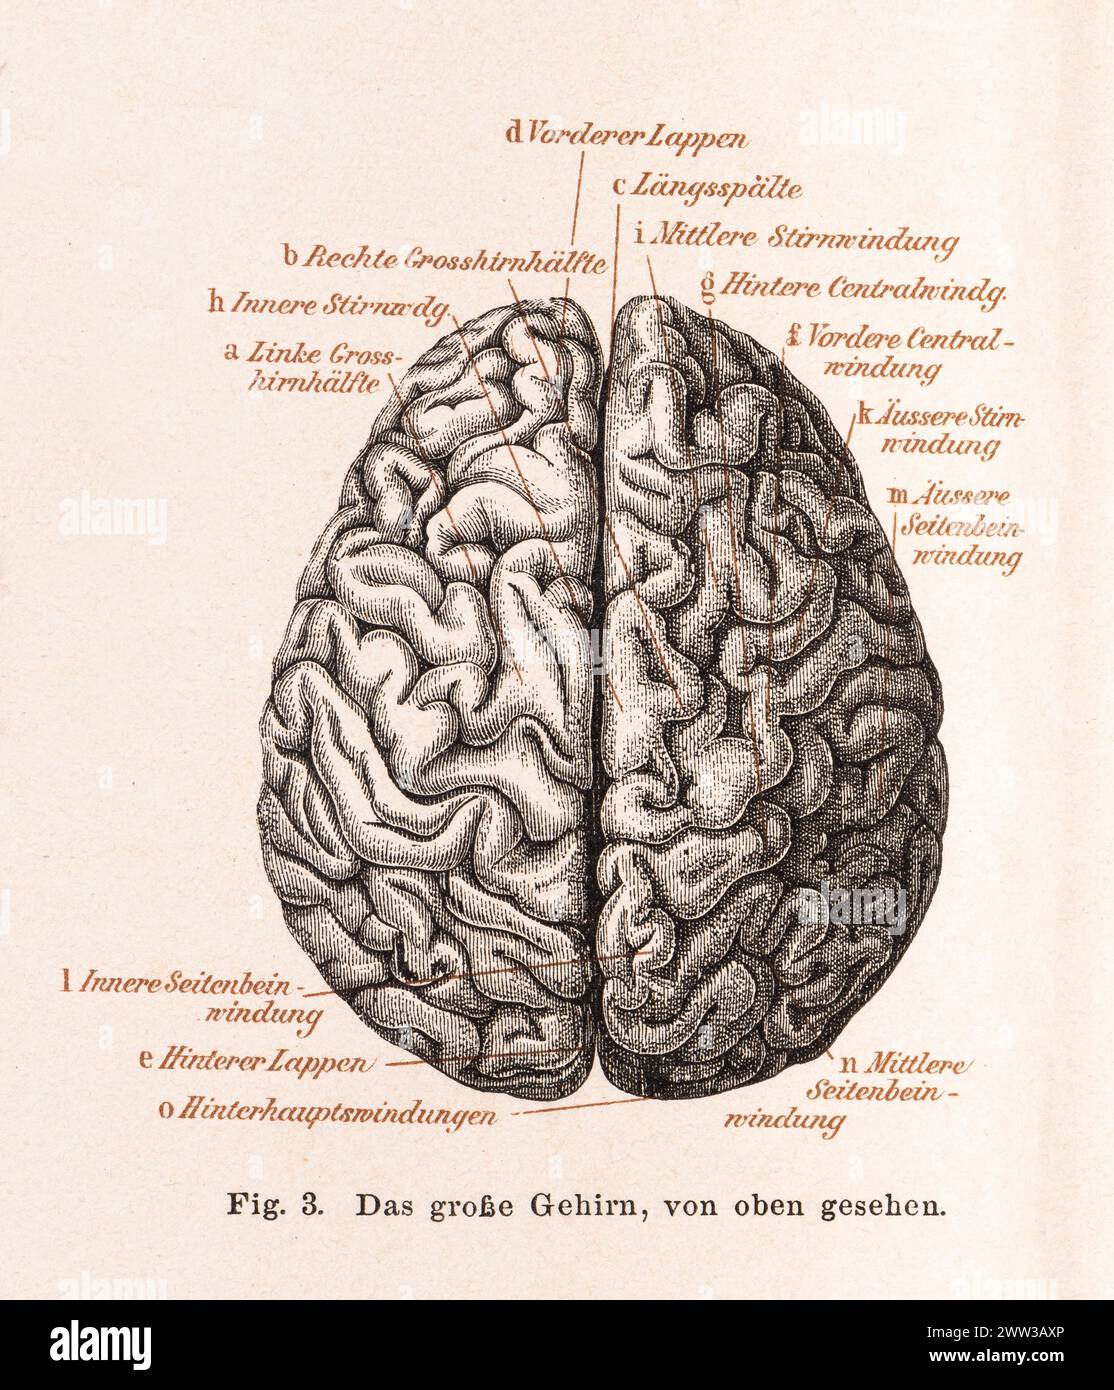 Medizin, Anatomie, Illustration, menschliches Gehirn von oben, Gehirn, Gehirn mit detaillierten Falten, mit Beschriftung, linkes und rechtes Gehirn Stockfoto